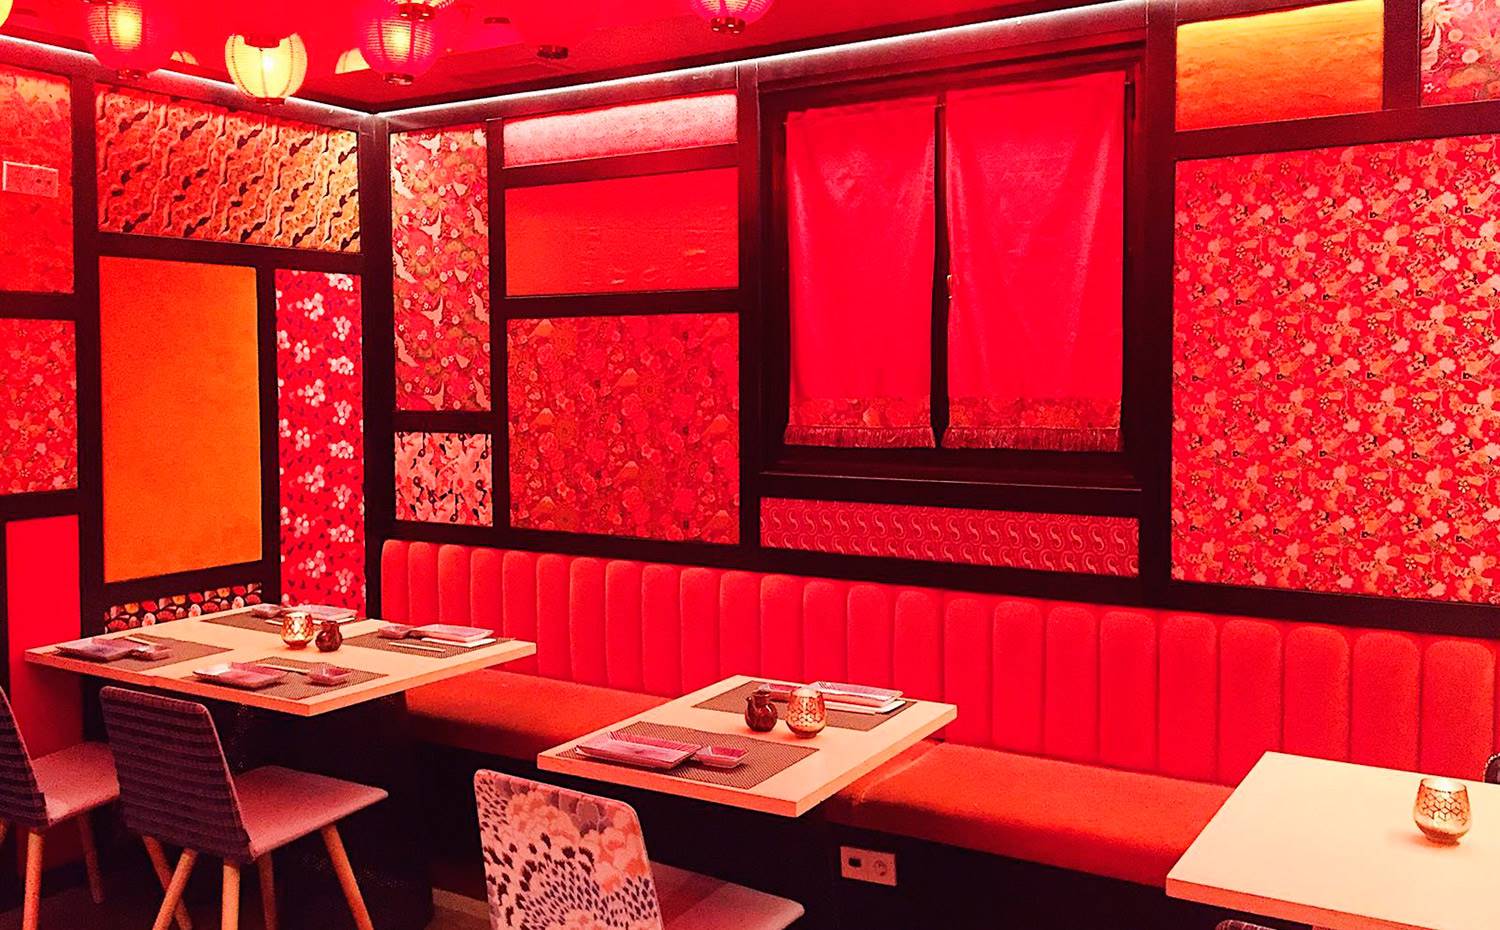 El salón rojo del restaurante Chic Sushi, decorado por Pepe Leal, te transporta directamente a Oriente. 